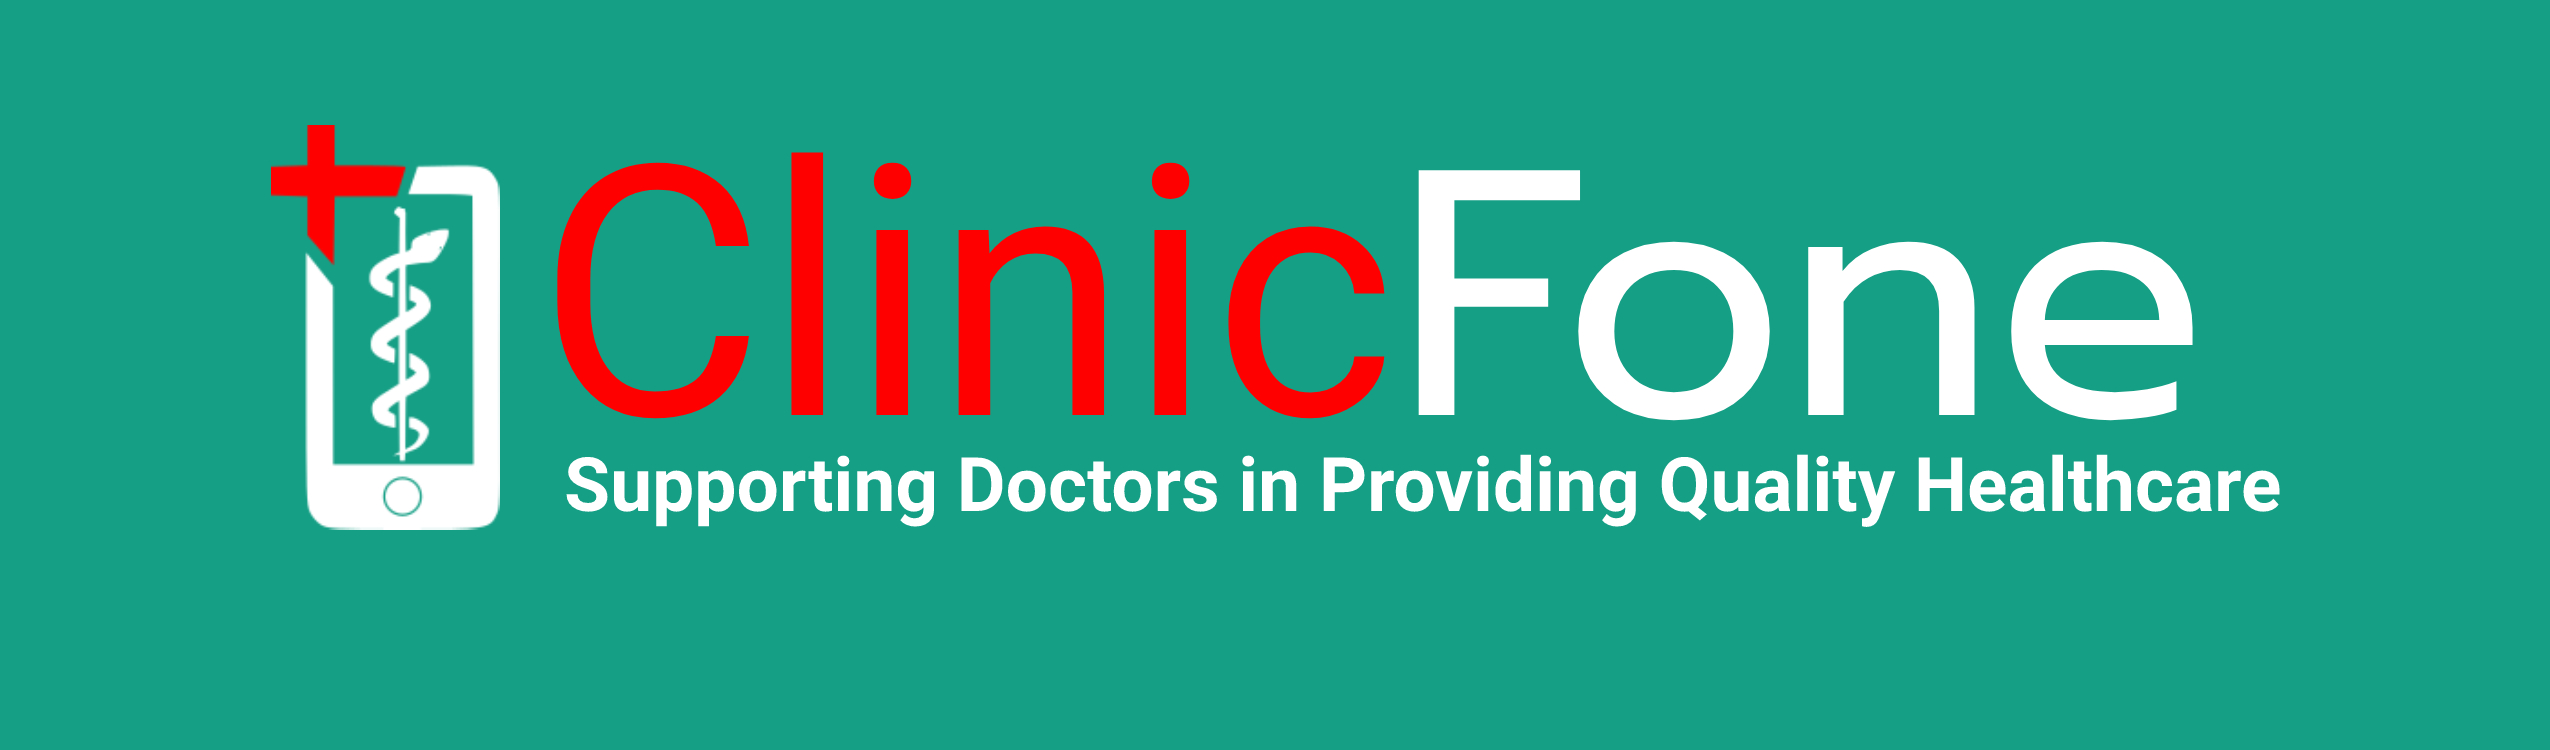 ClinicFone Logo with Motto v1.0.jpg